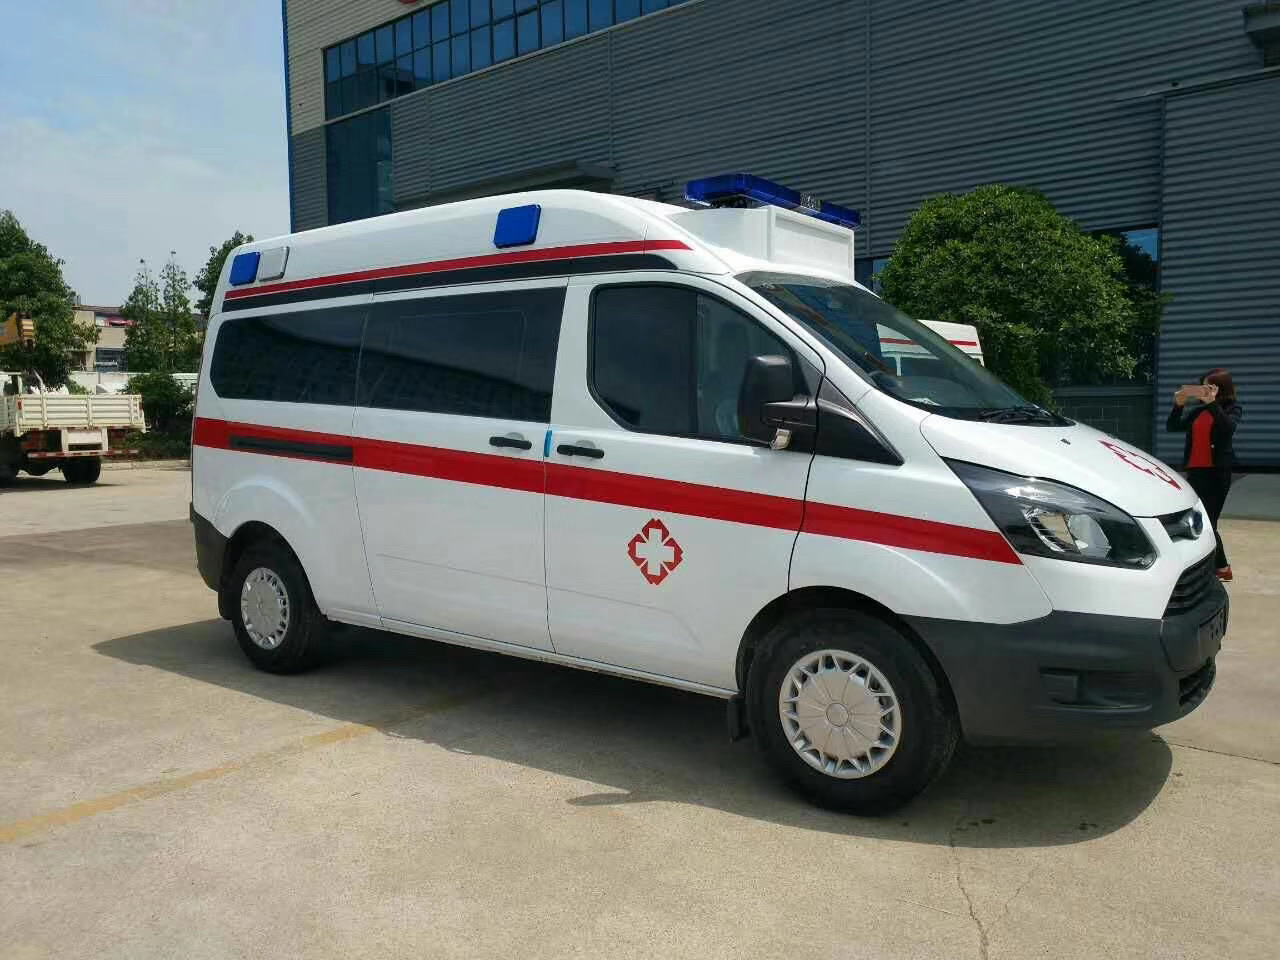 青龙满族自治县出院转院救护车